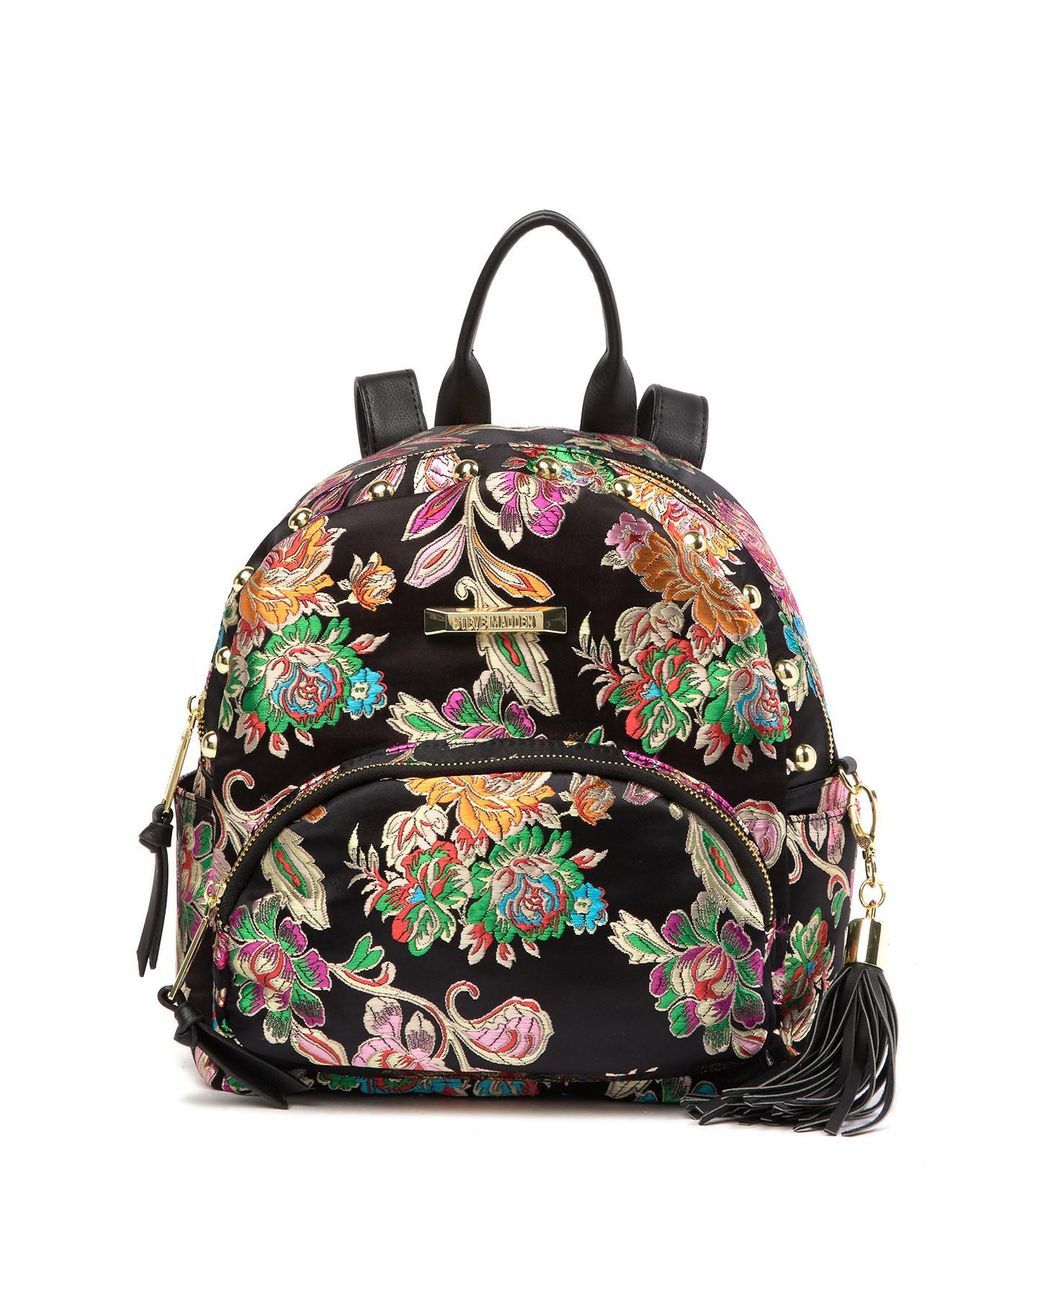 NEW Steve Madden Floral Backpack